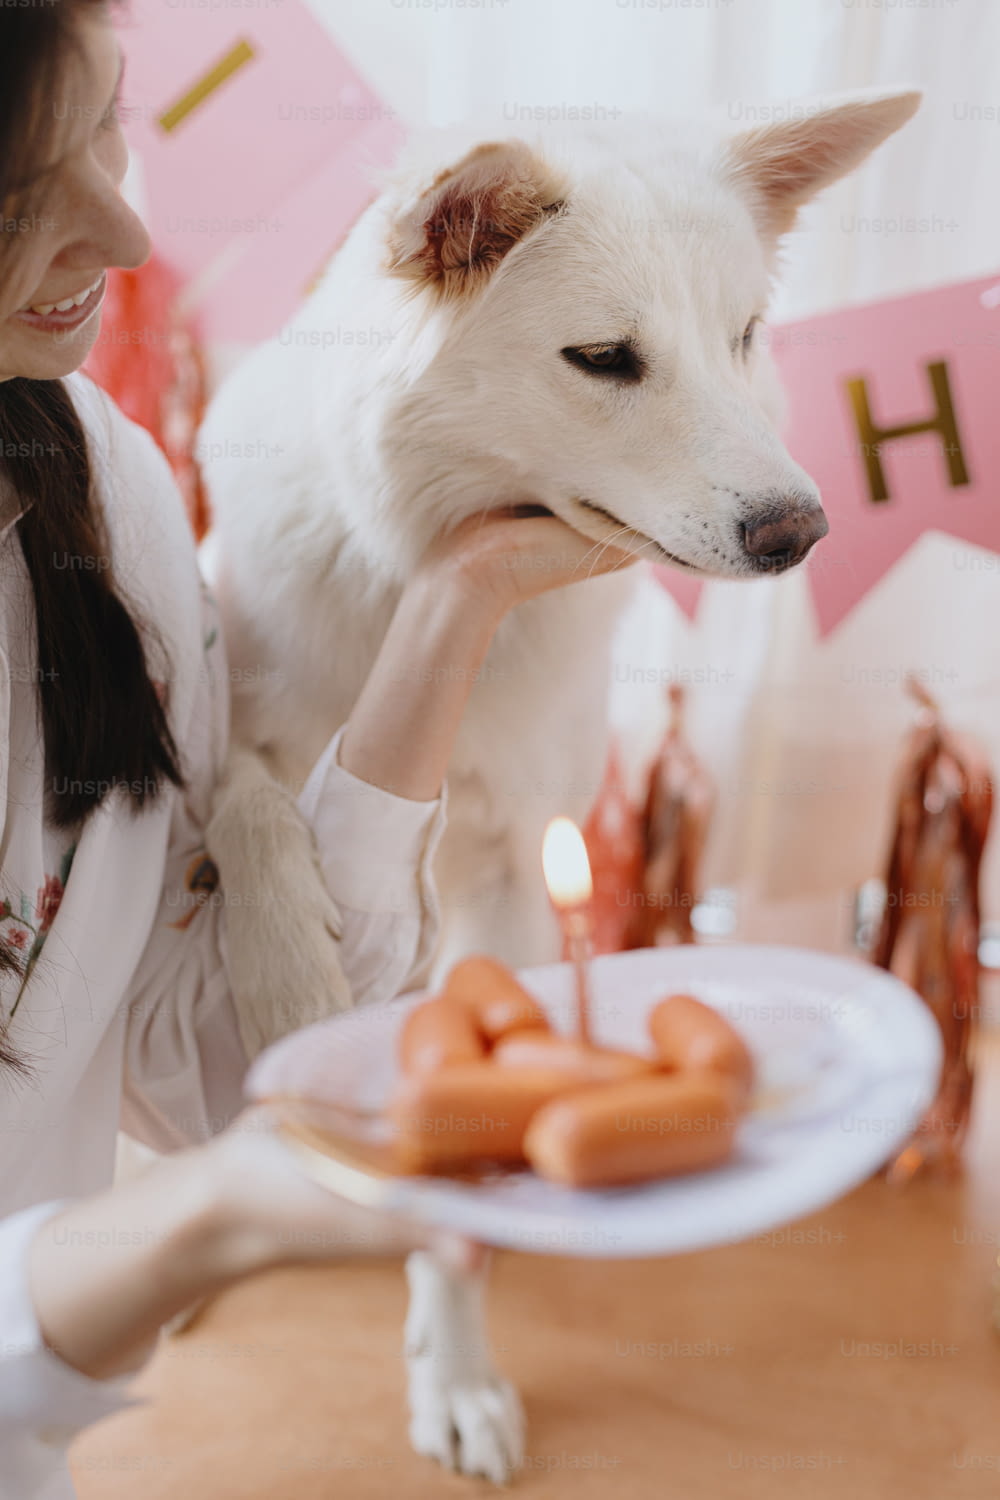 Mujer joven feliz que celebra el cumpleaños del perro con pastel de salchicha y vela sobre fondo de guirnalda rosa y decoraciones. Fiesta de cumpleaños de perros. Adorable primer cumpleaños del perro pastor suizo blanco